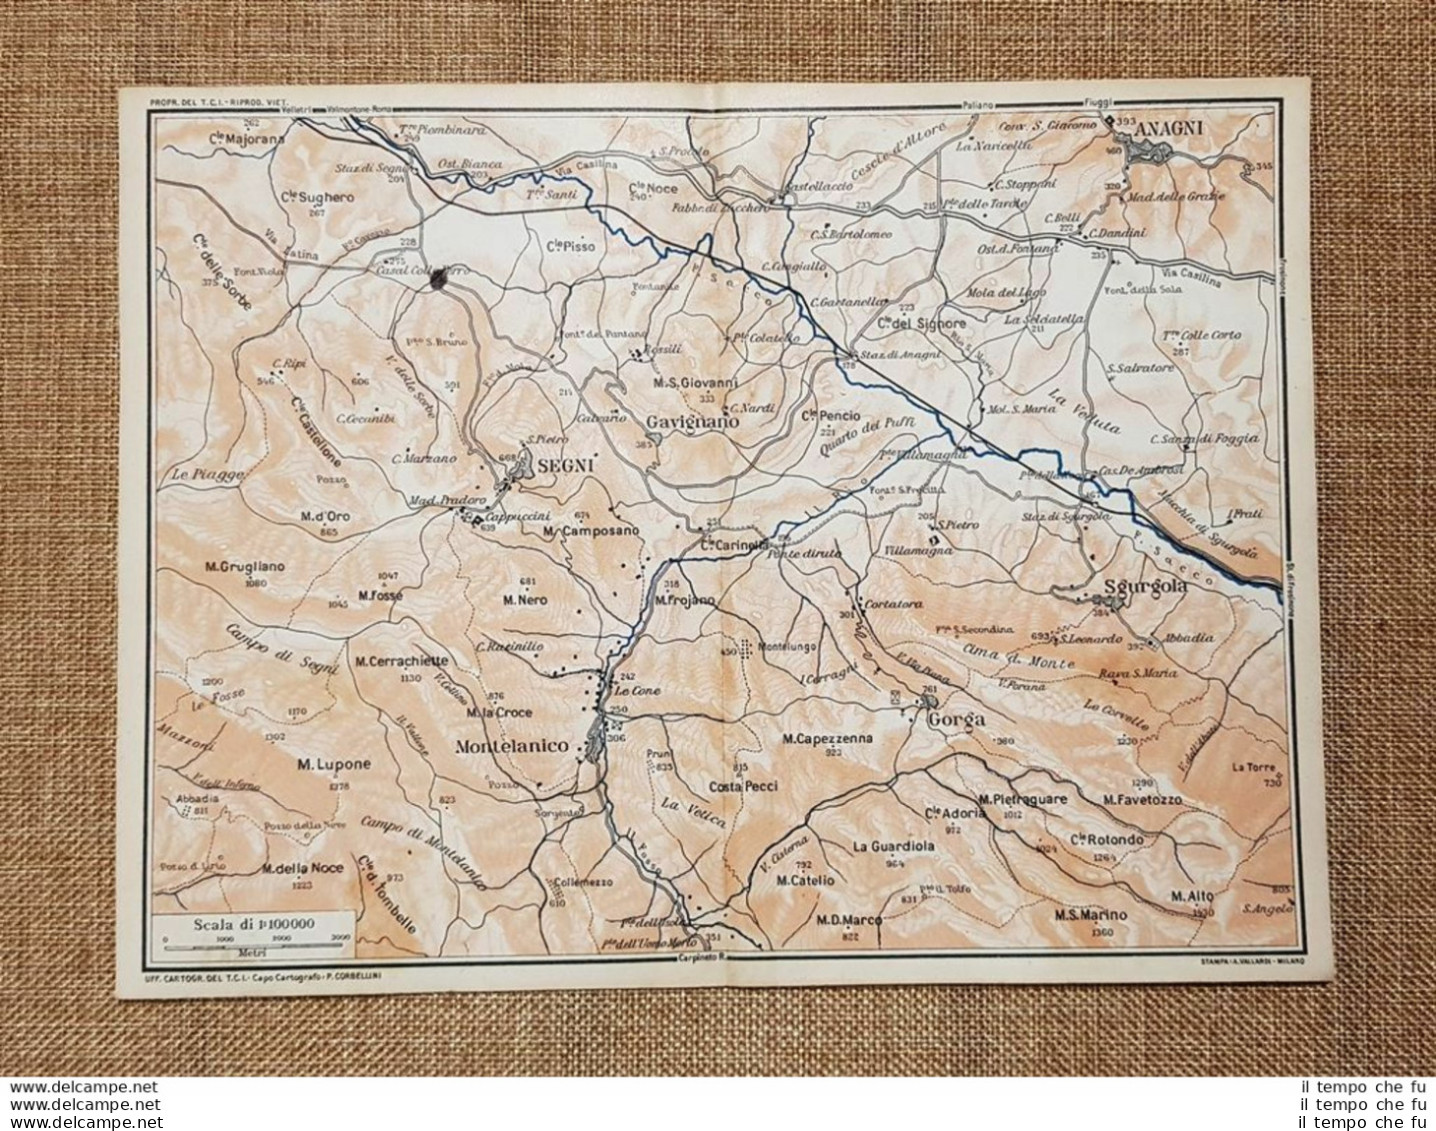 Carta O Cartina Del 1924 Anagni Gavignano Segni Montelanico Gorga Lazio T.C.I. - Geographical Maps